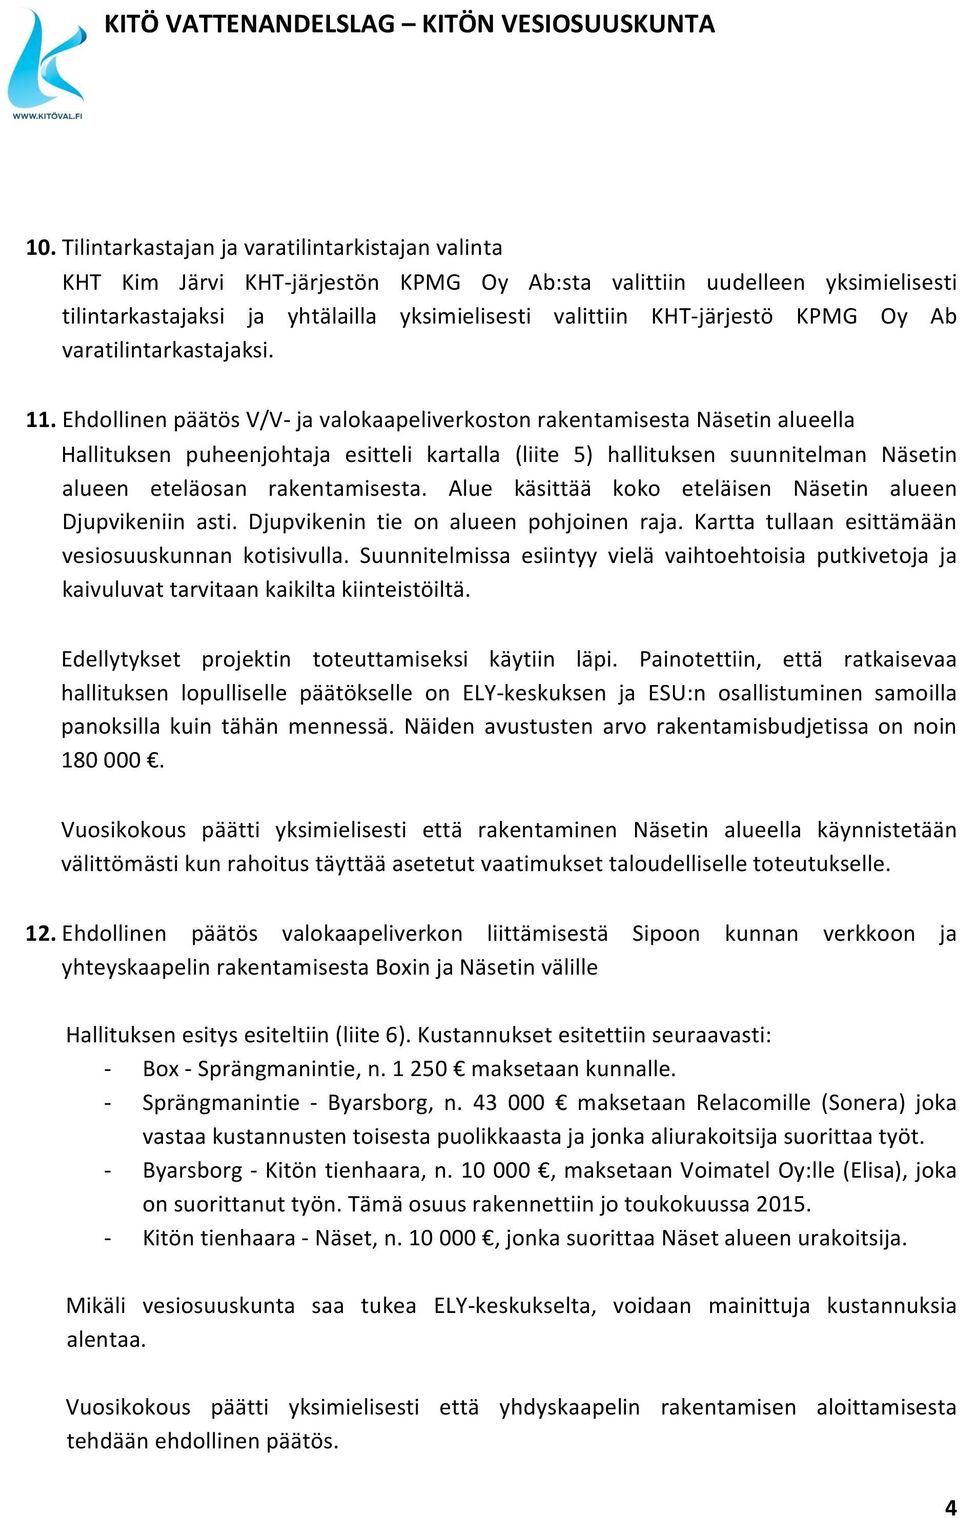 Ehdollinen päätös V/V- ja valokaapeliverkoston rakentamisesta Näsetin alueella Hallituksen puheenjohtaja esitteli kartalla (liite 5) hallituksen suunnitelman Näsetin alueen eteläosan rakentamisesta.